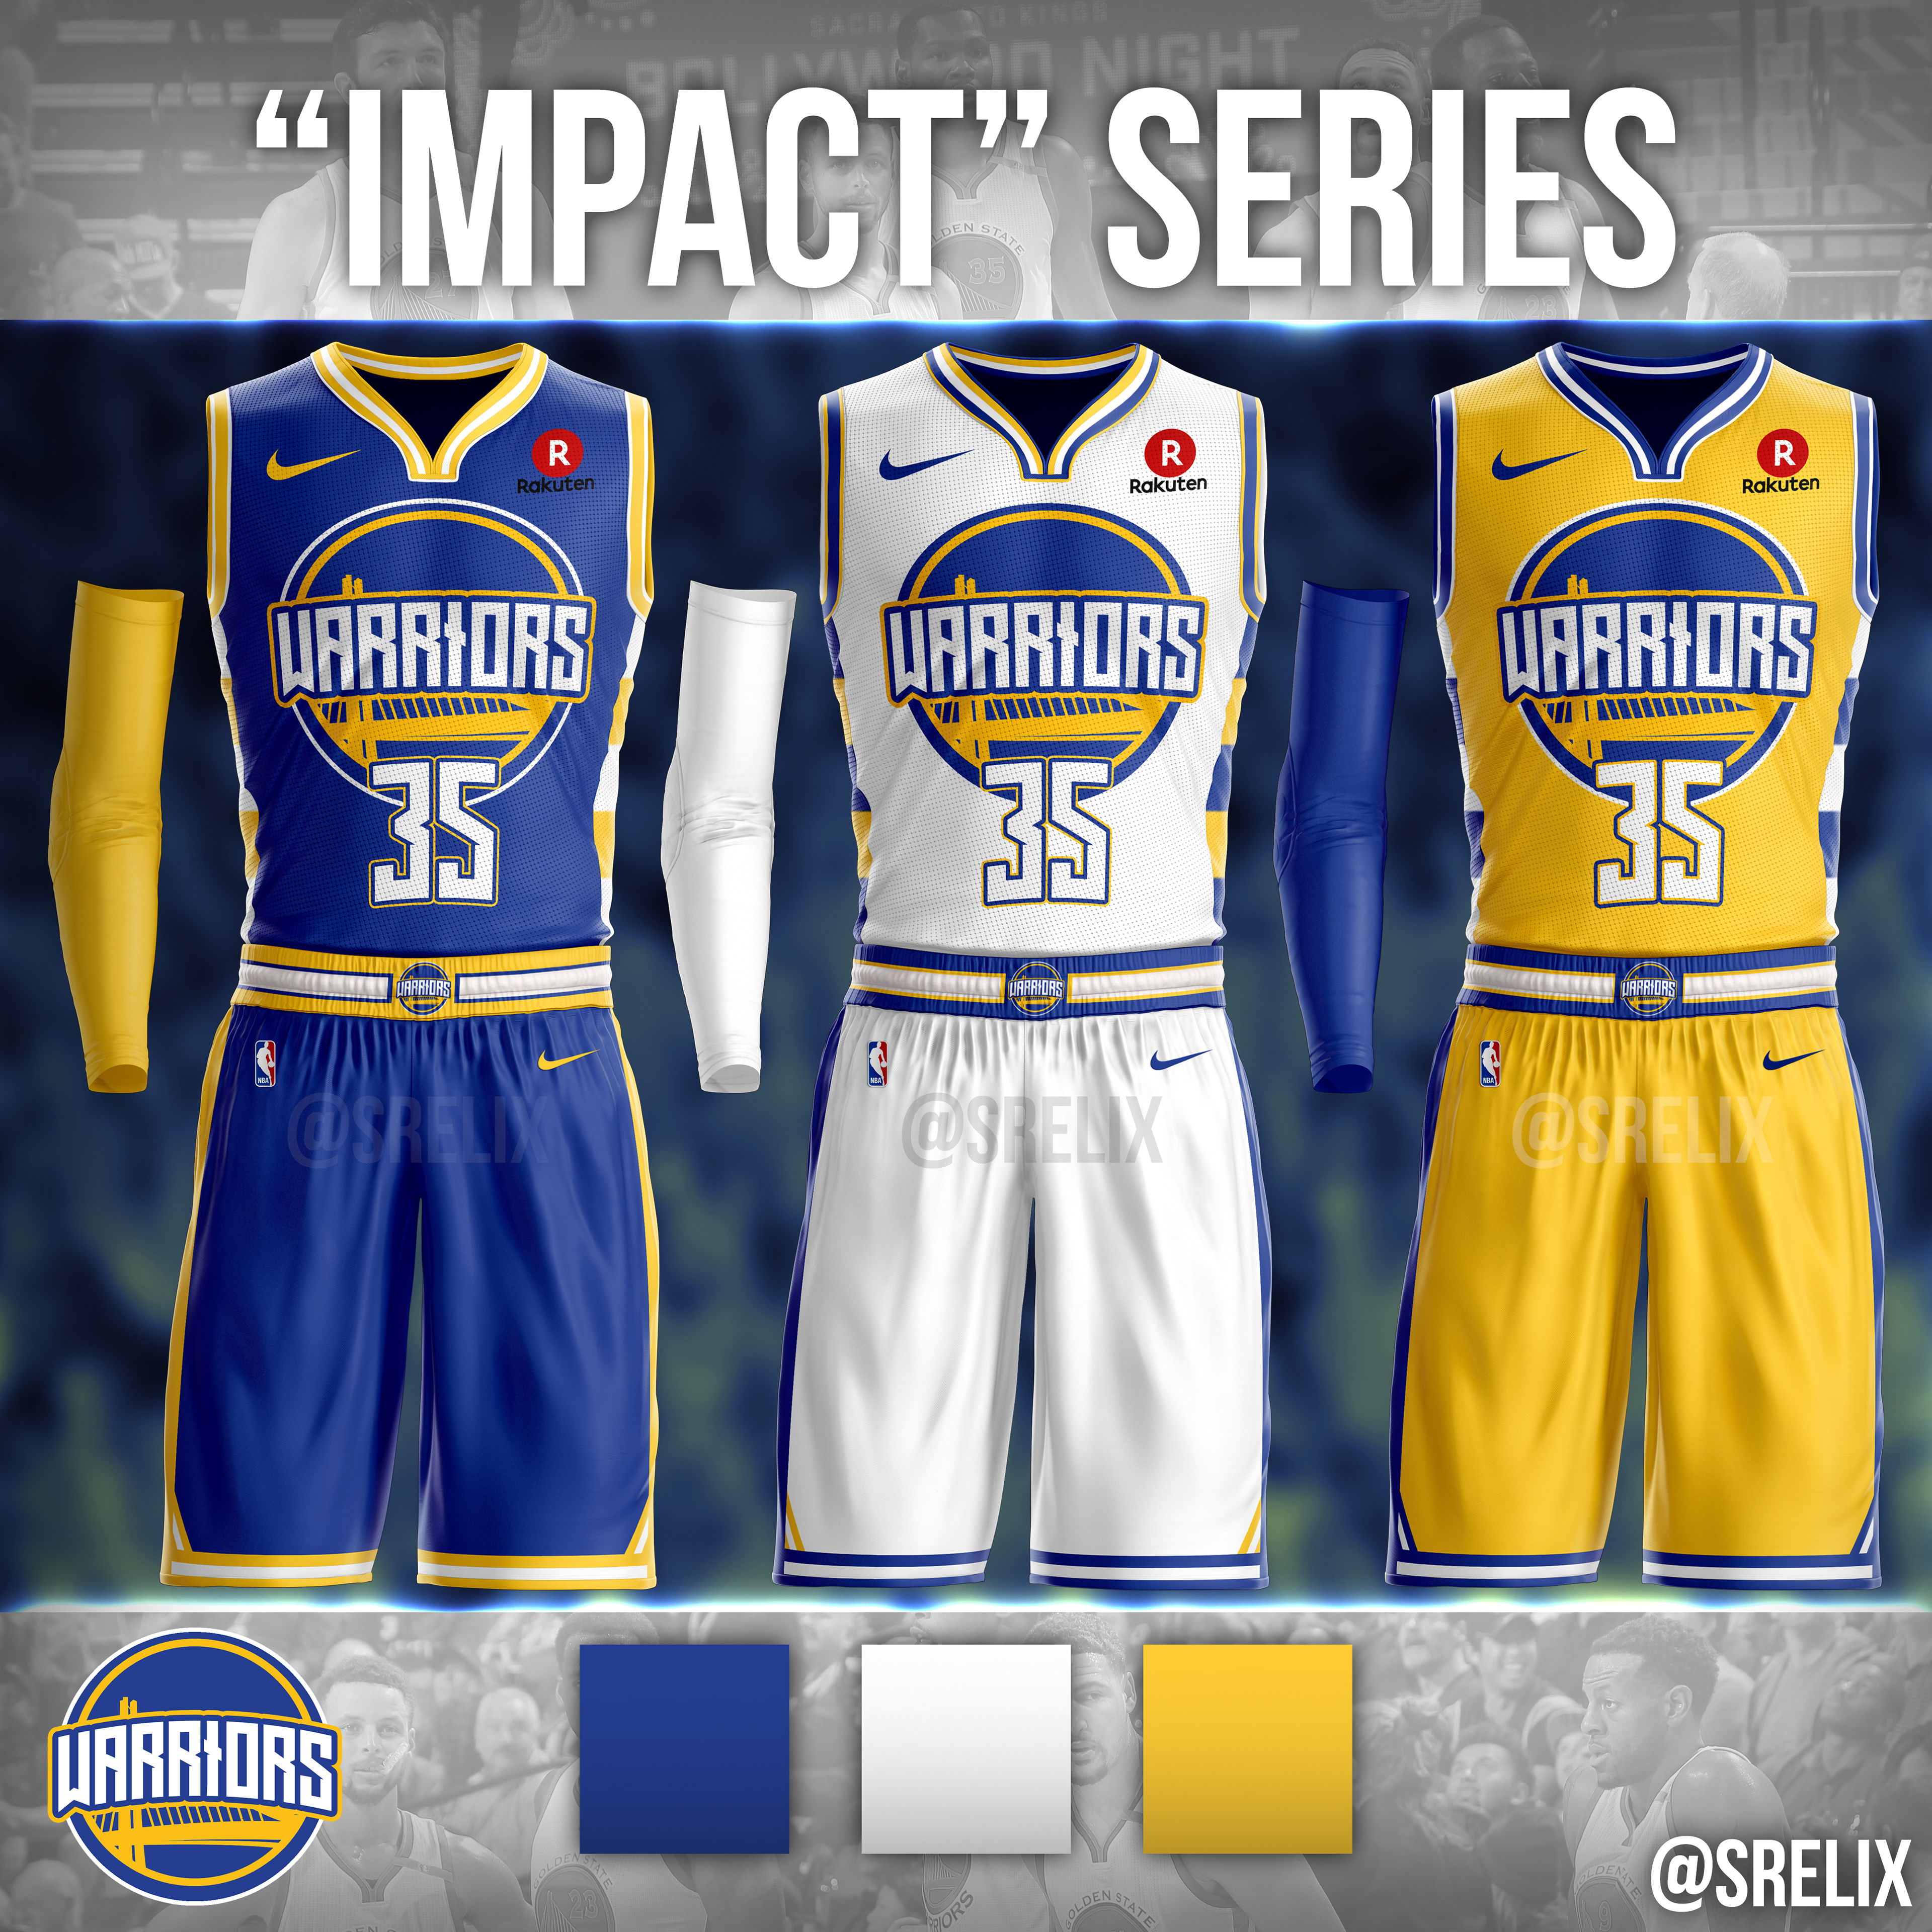 280 NBA Concept Designs ideas in 2023  nba, basketball uniforms design,  basketball uniforms